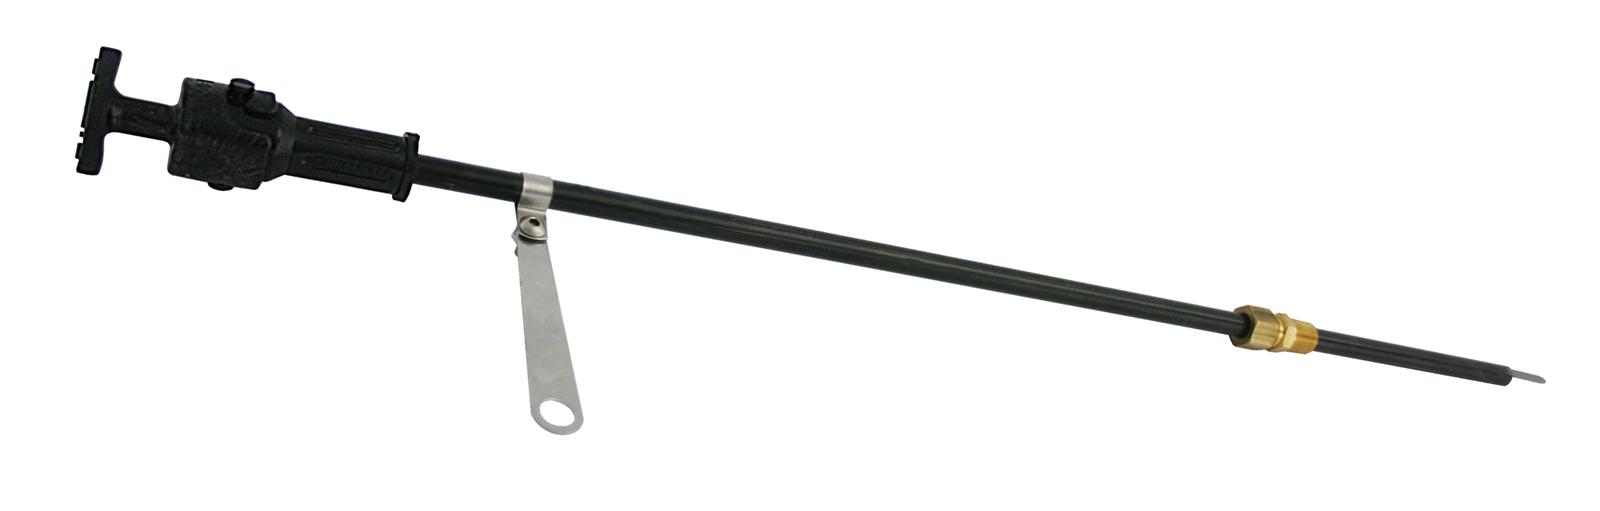 MOROSO Universal Locking Oil Dipstick Kit P/N 25973 